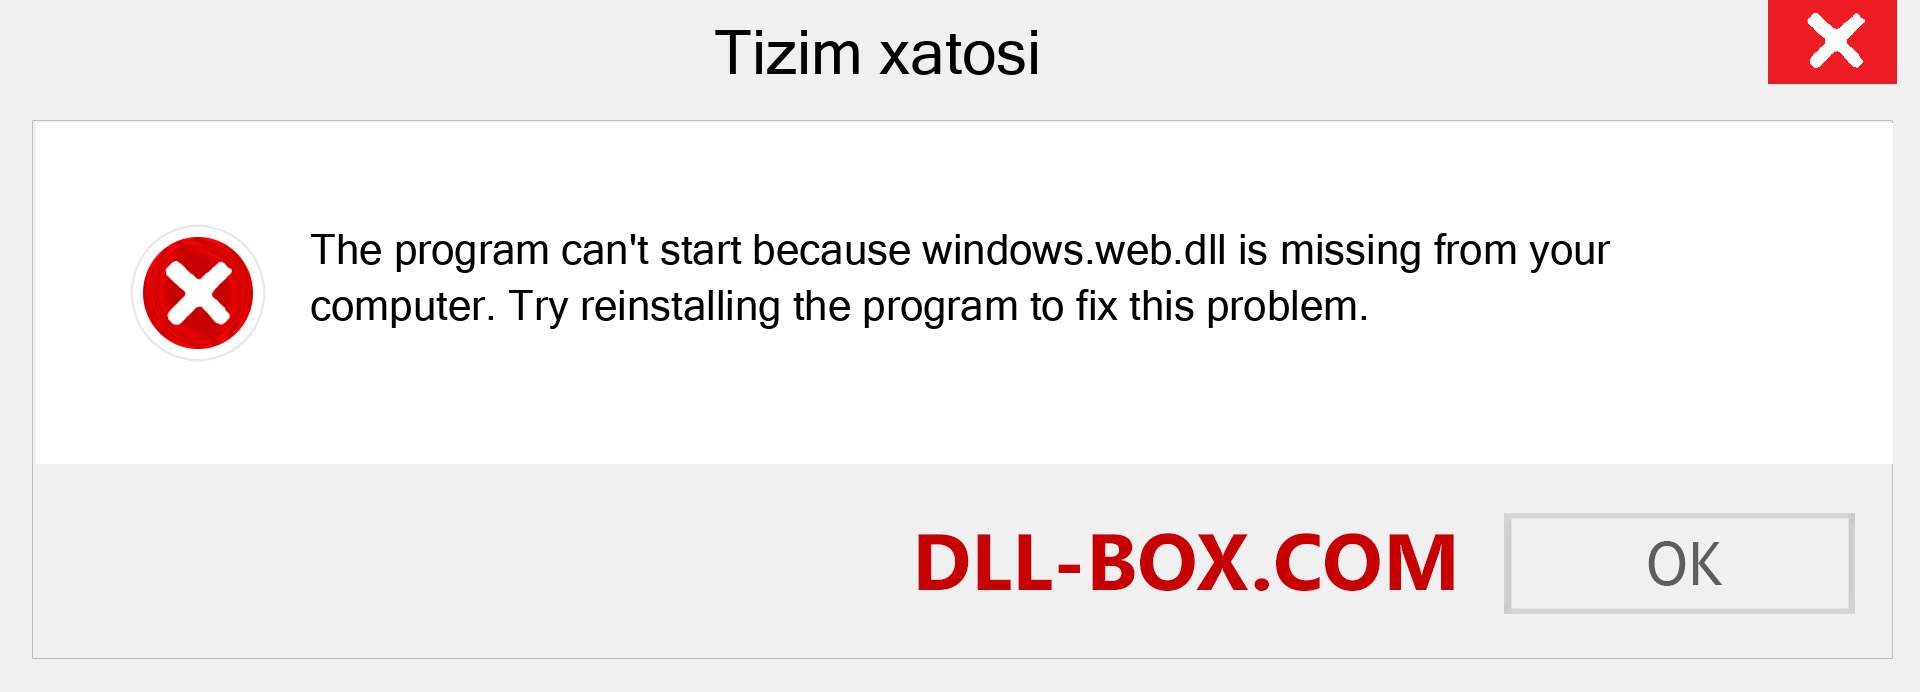 windows.web.dll fayli yo'qolganmi?. Windows 7, 8, 10 uchun yuklab olish - Windowsda windows.web dll etishmayotgan xatoni tuzating, rasmlar, rasmlar